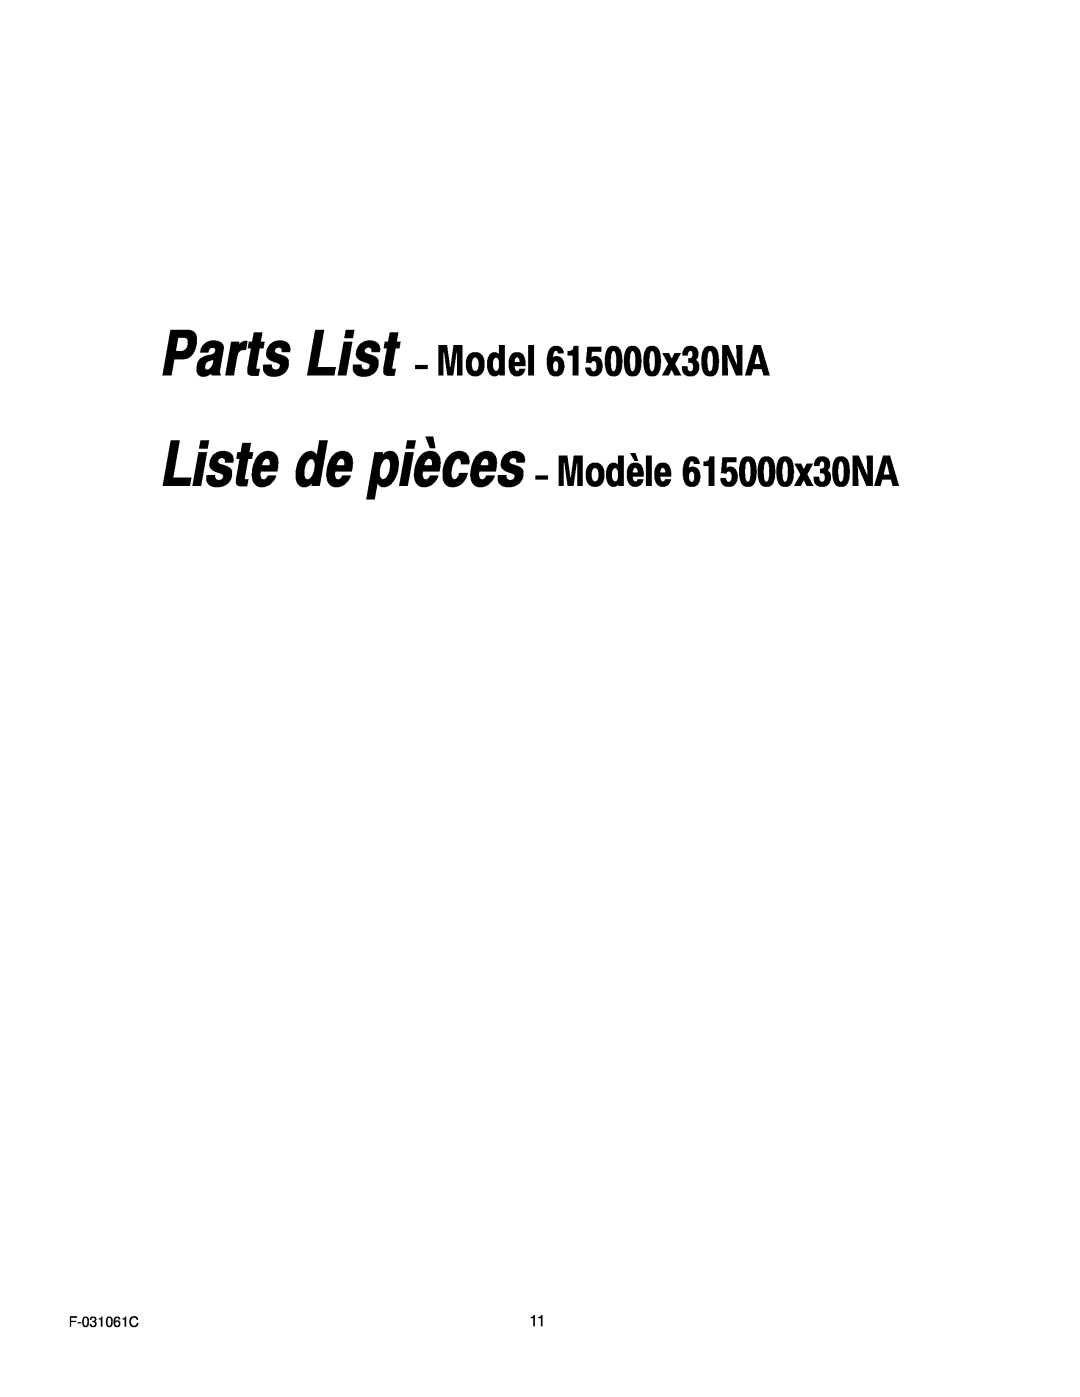 Murray owner manual Parts List - Model 615000x30NA Liste de pièces - Modèle 615000x30NA, F-031061C 